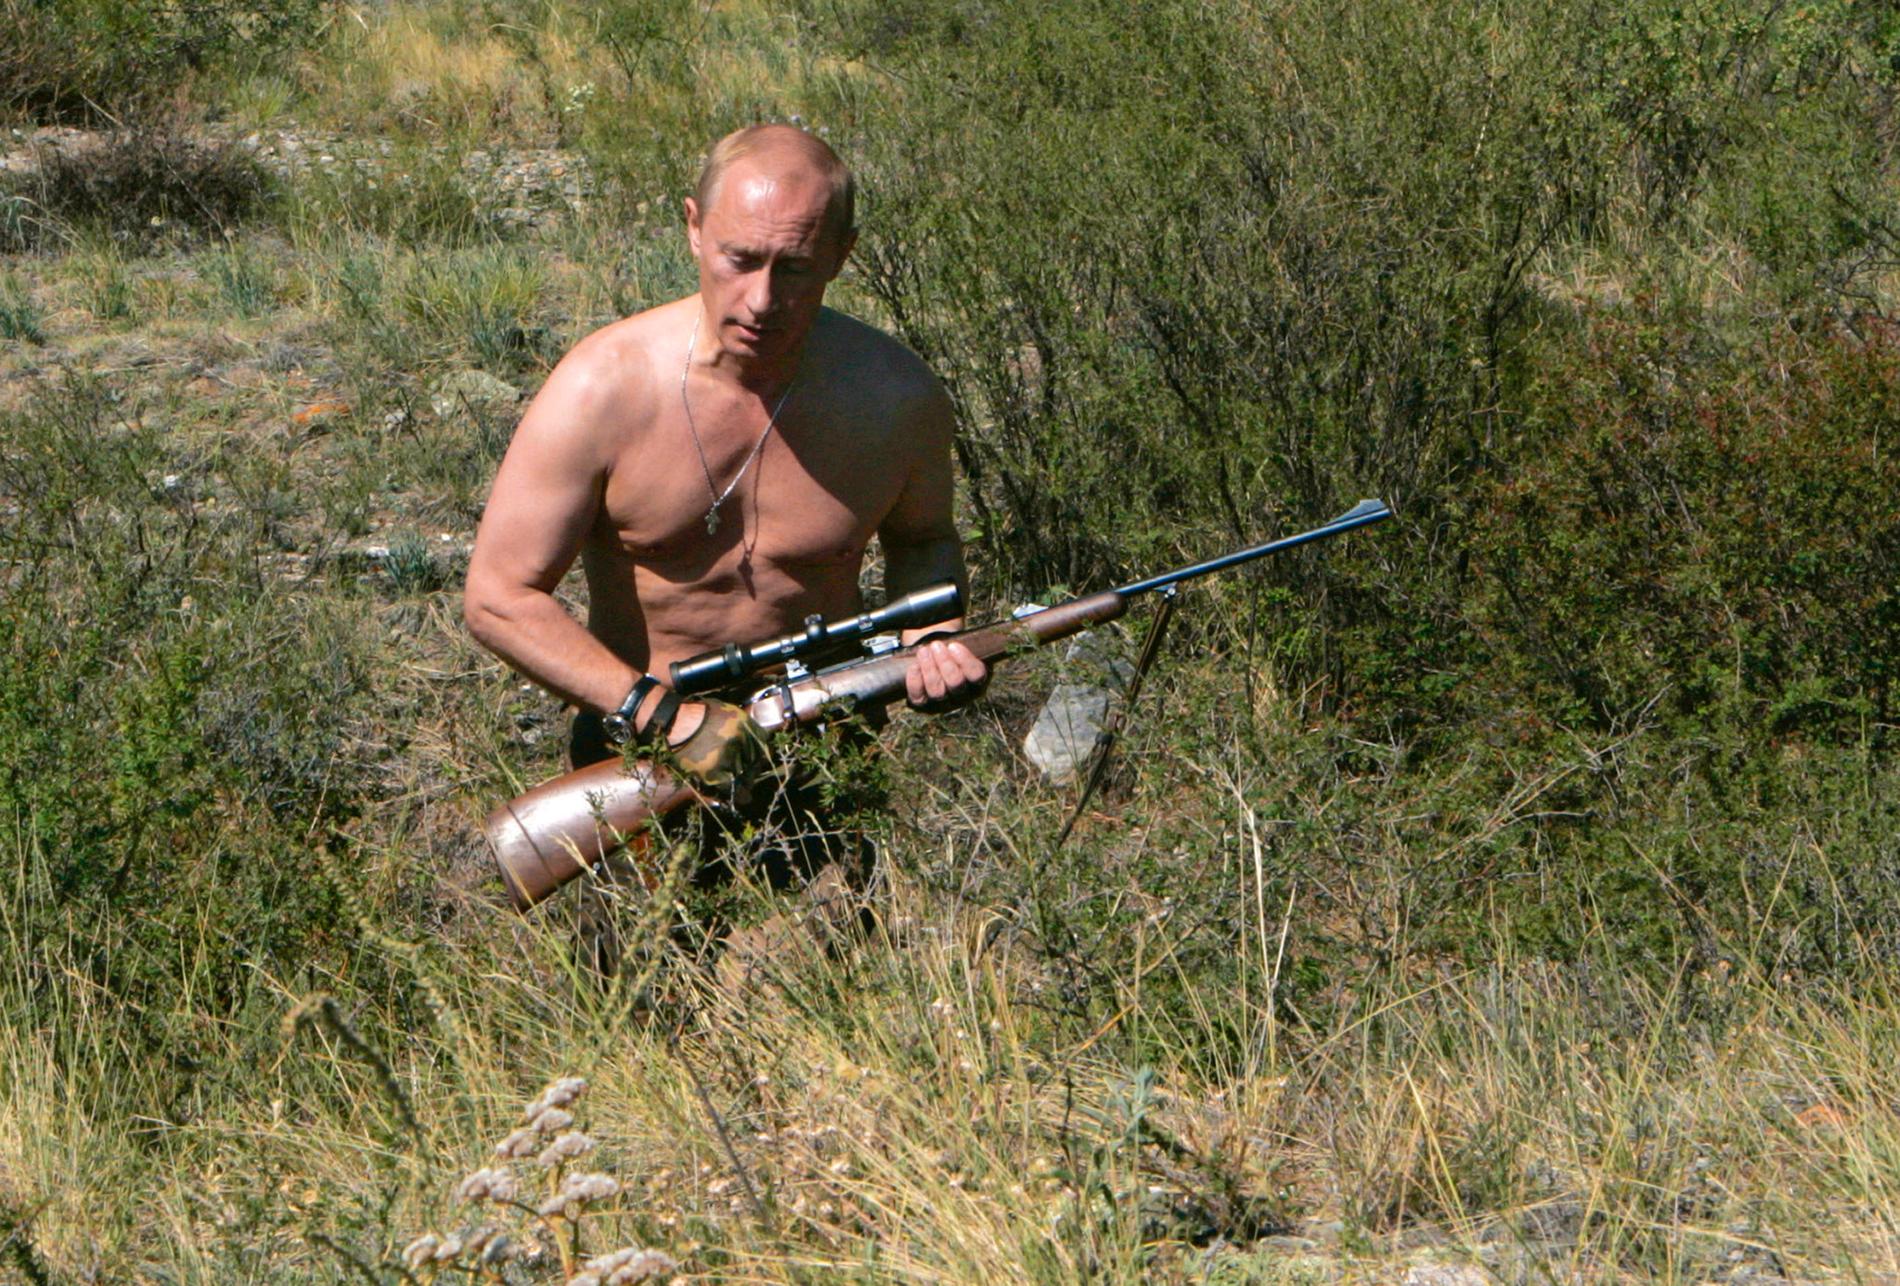 Putin framställer sig gärna som ”stark man” i olika mer eller mindre spontana bilder. Springandes med gevär, på hästrygg, i vinterbad eller spelandes hockey.